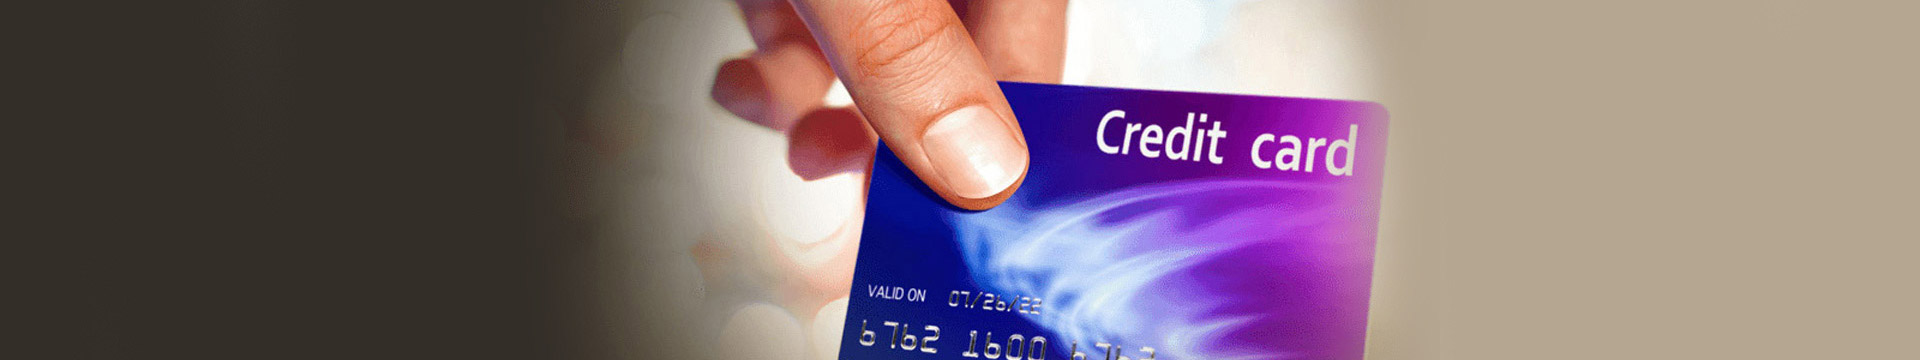 ใช้บัตรเครดิตอย่างไรให้ปลอดภัยจากโจรกรรม